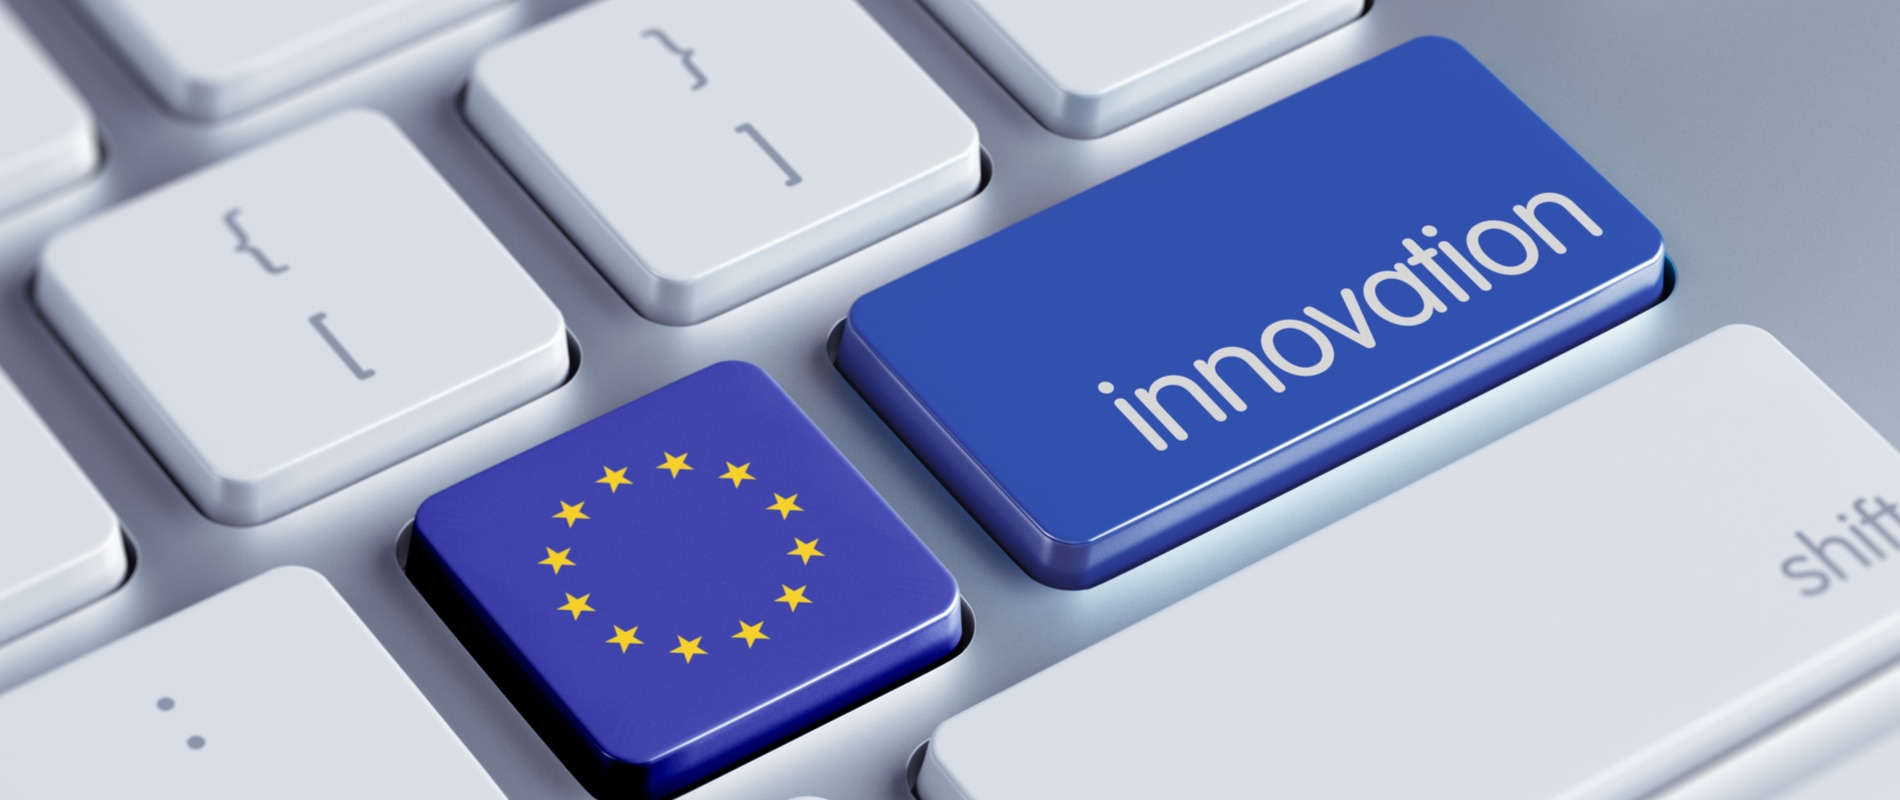 union-europea-europa-innovacion-fintech-bbva